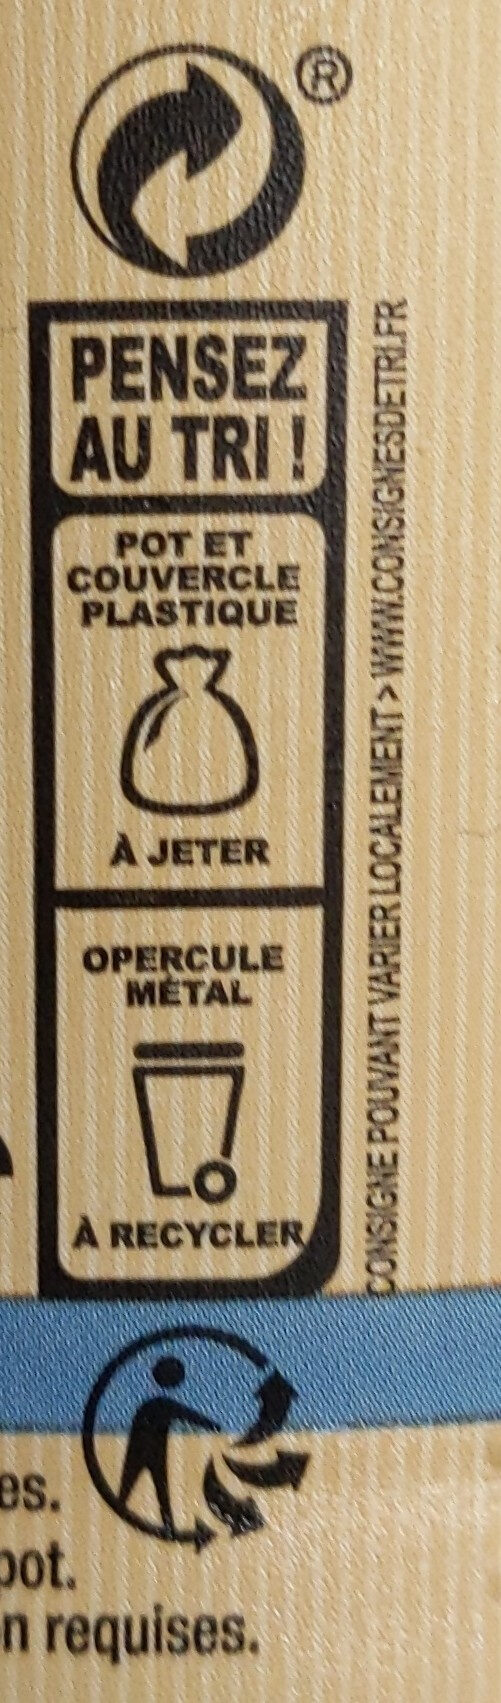 Rillettes de thon - Instruction de recyclage et/ou informations d'emballage